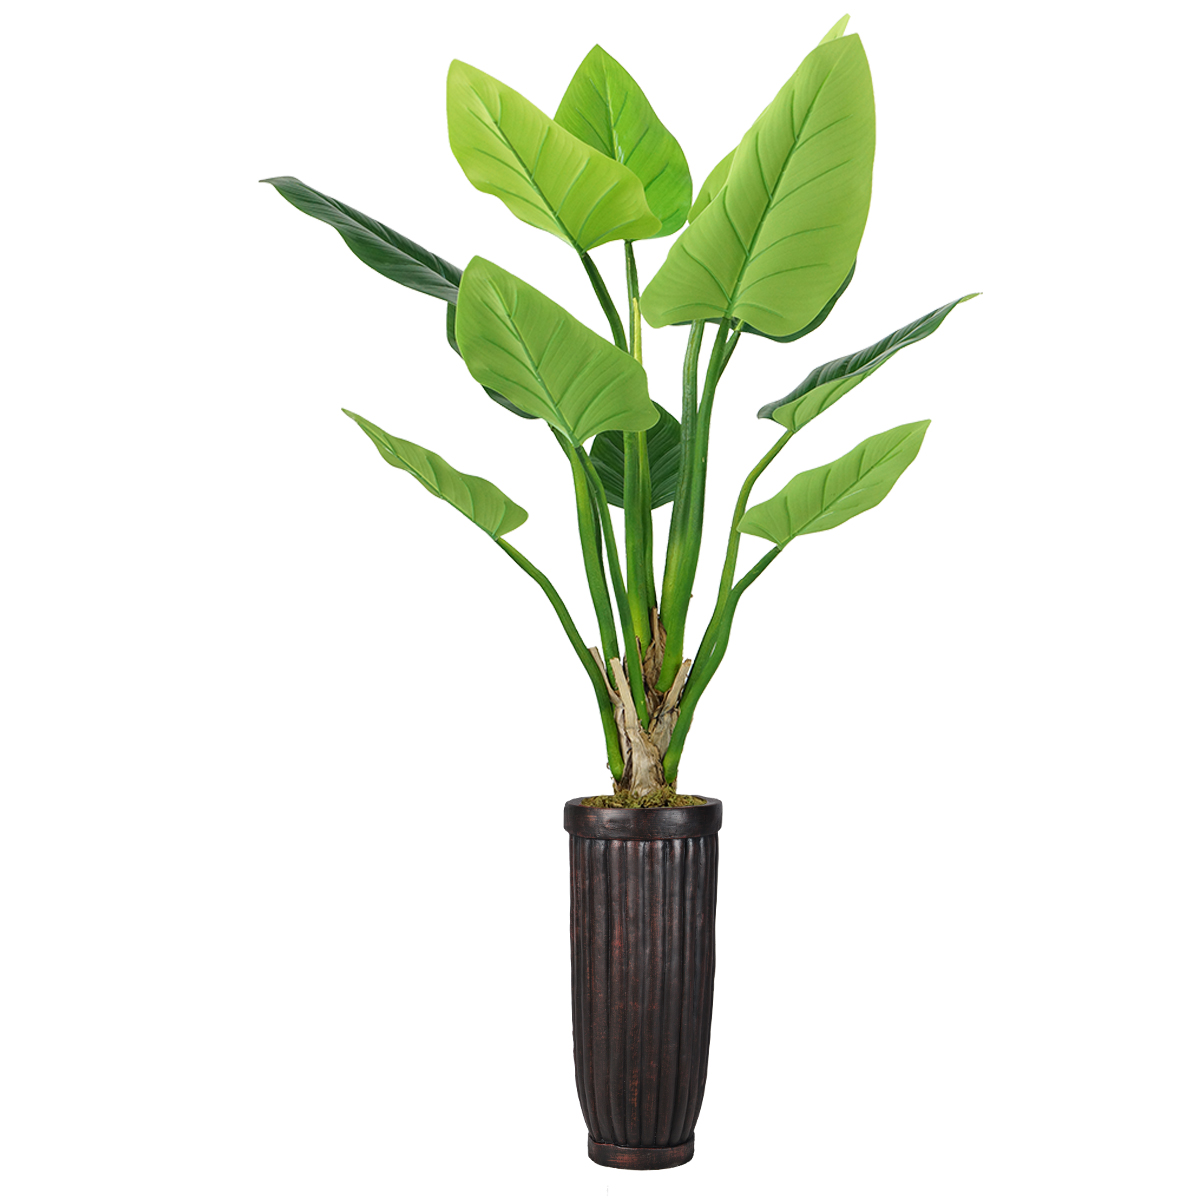 Vhx136214 69 In. Philodendron Erubescens Green Emerald Plant In Fiberstone Planter